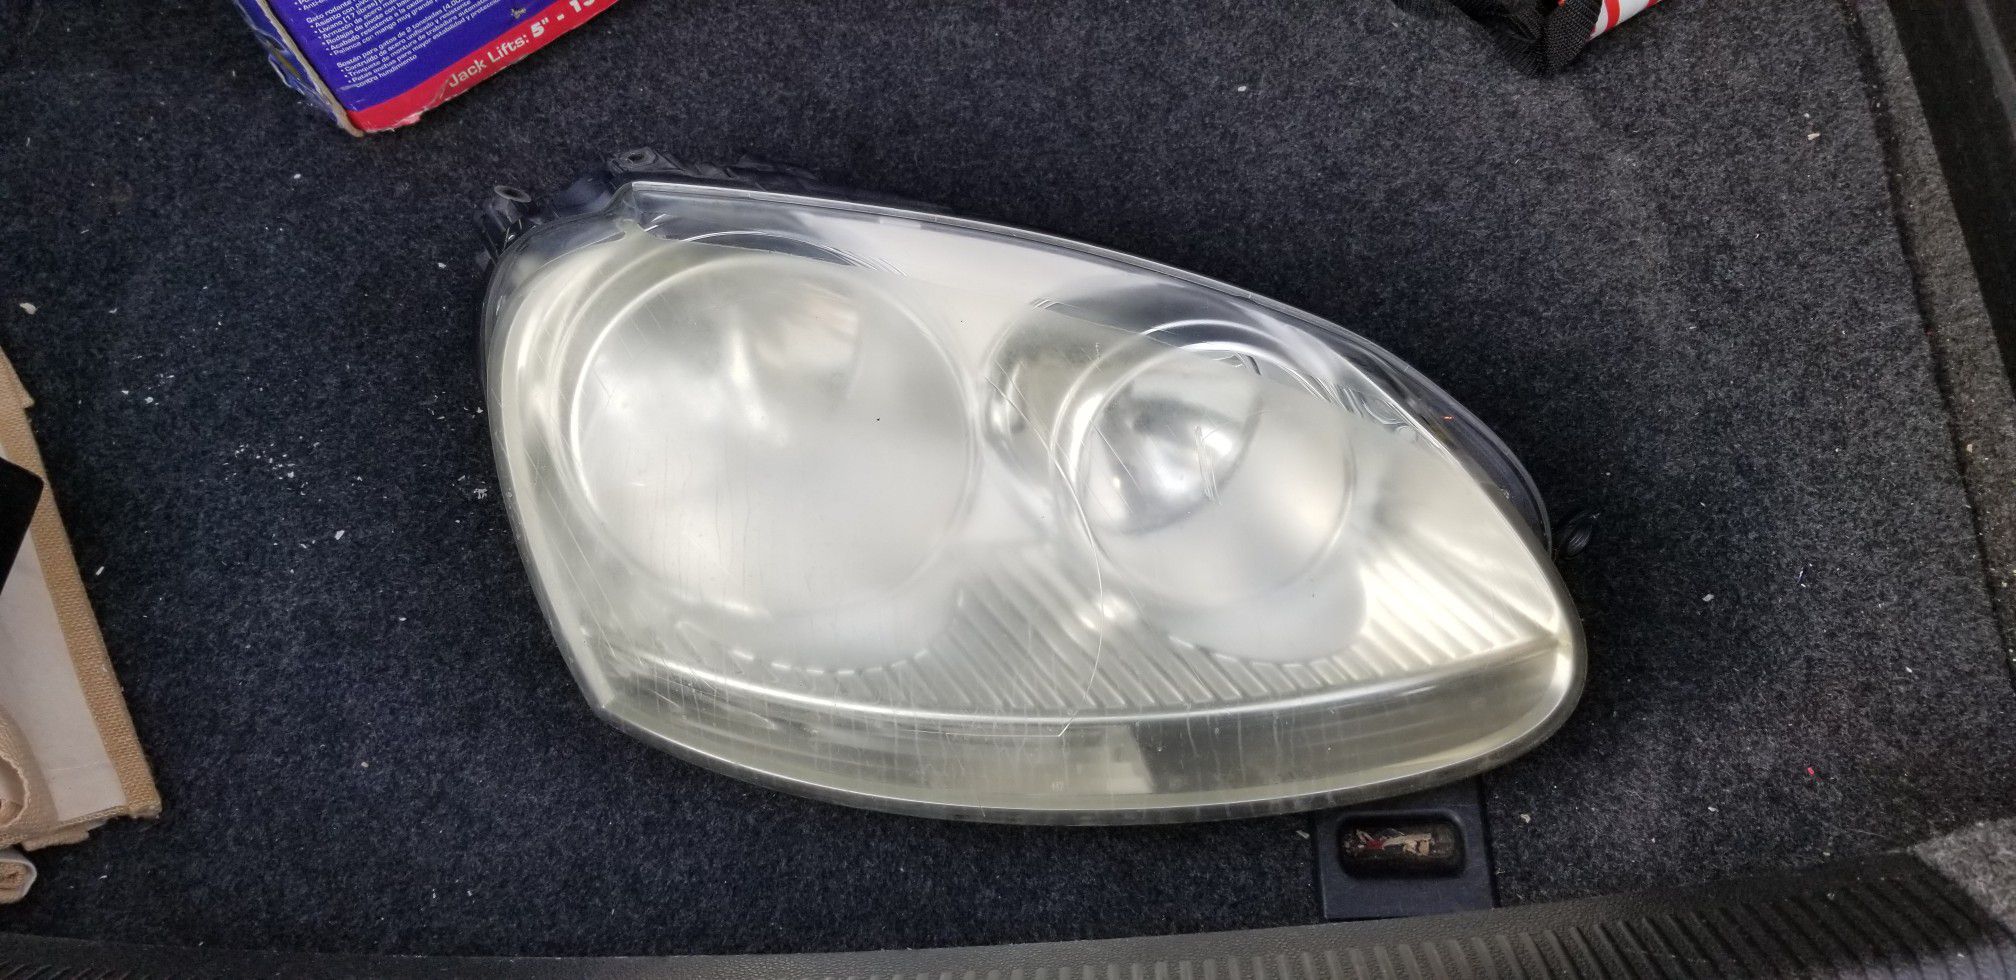 2006 Volkswagen headlight